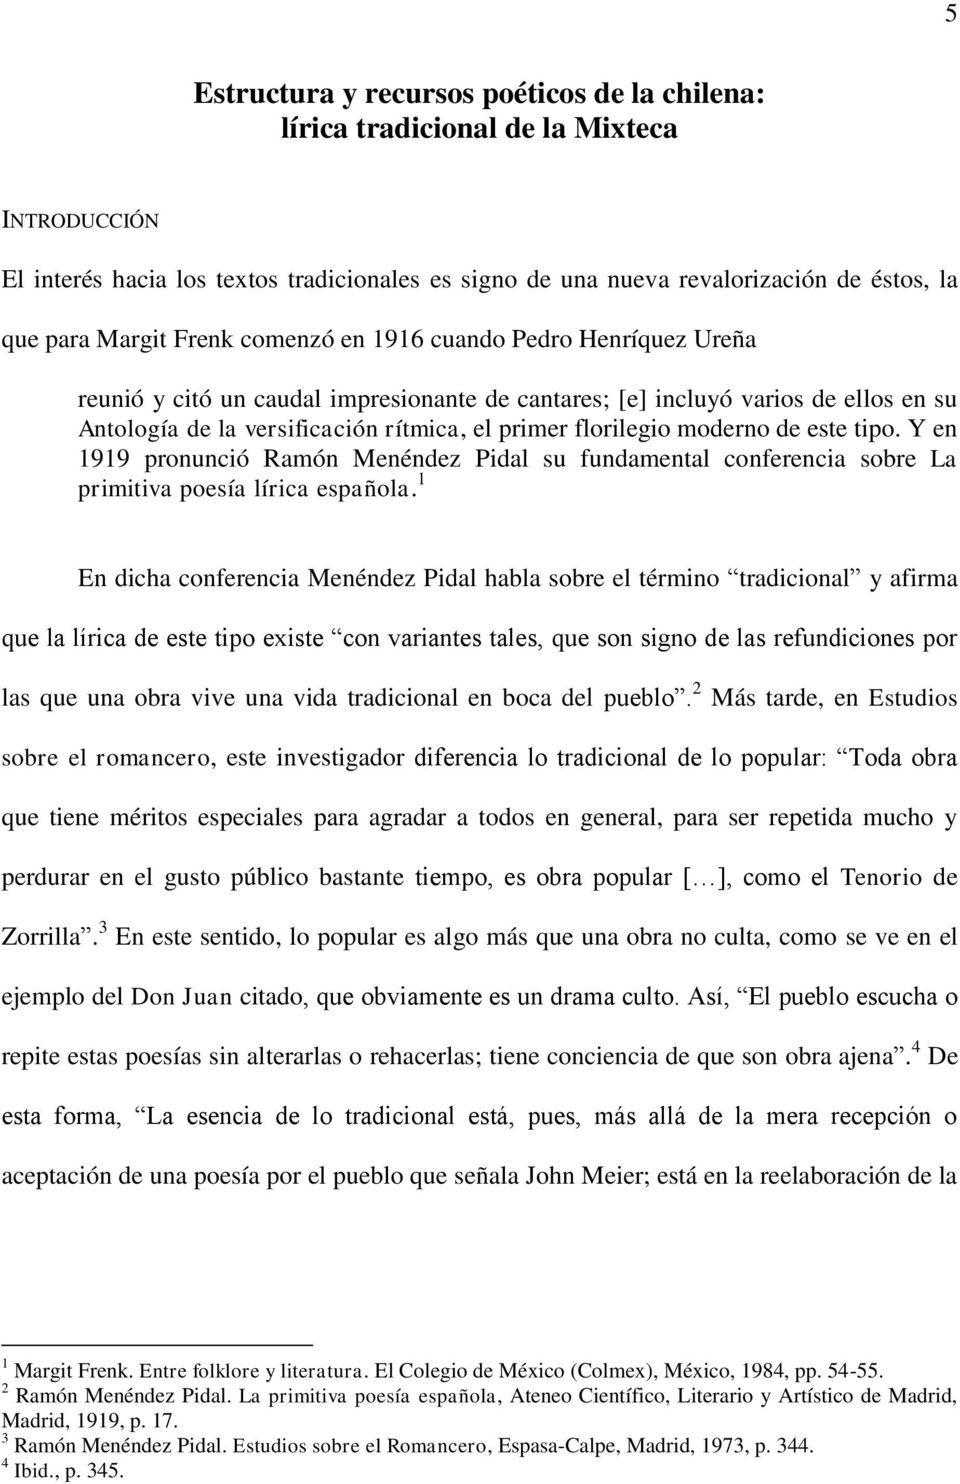 florilegio moderno de este tipo. Y en 1919 pronunció Ramón Menéndez Pidal su fundamental conferencia sobre La primitiva poesía lírica española.